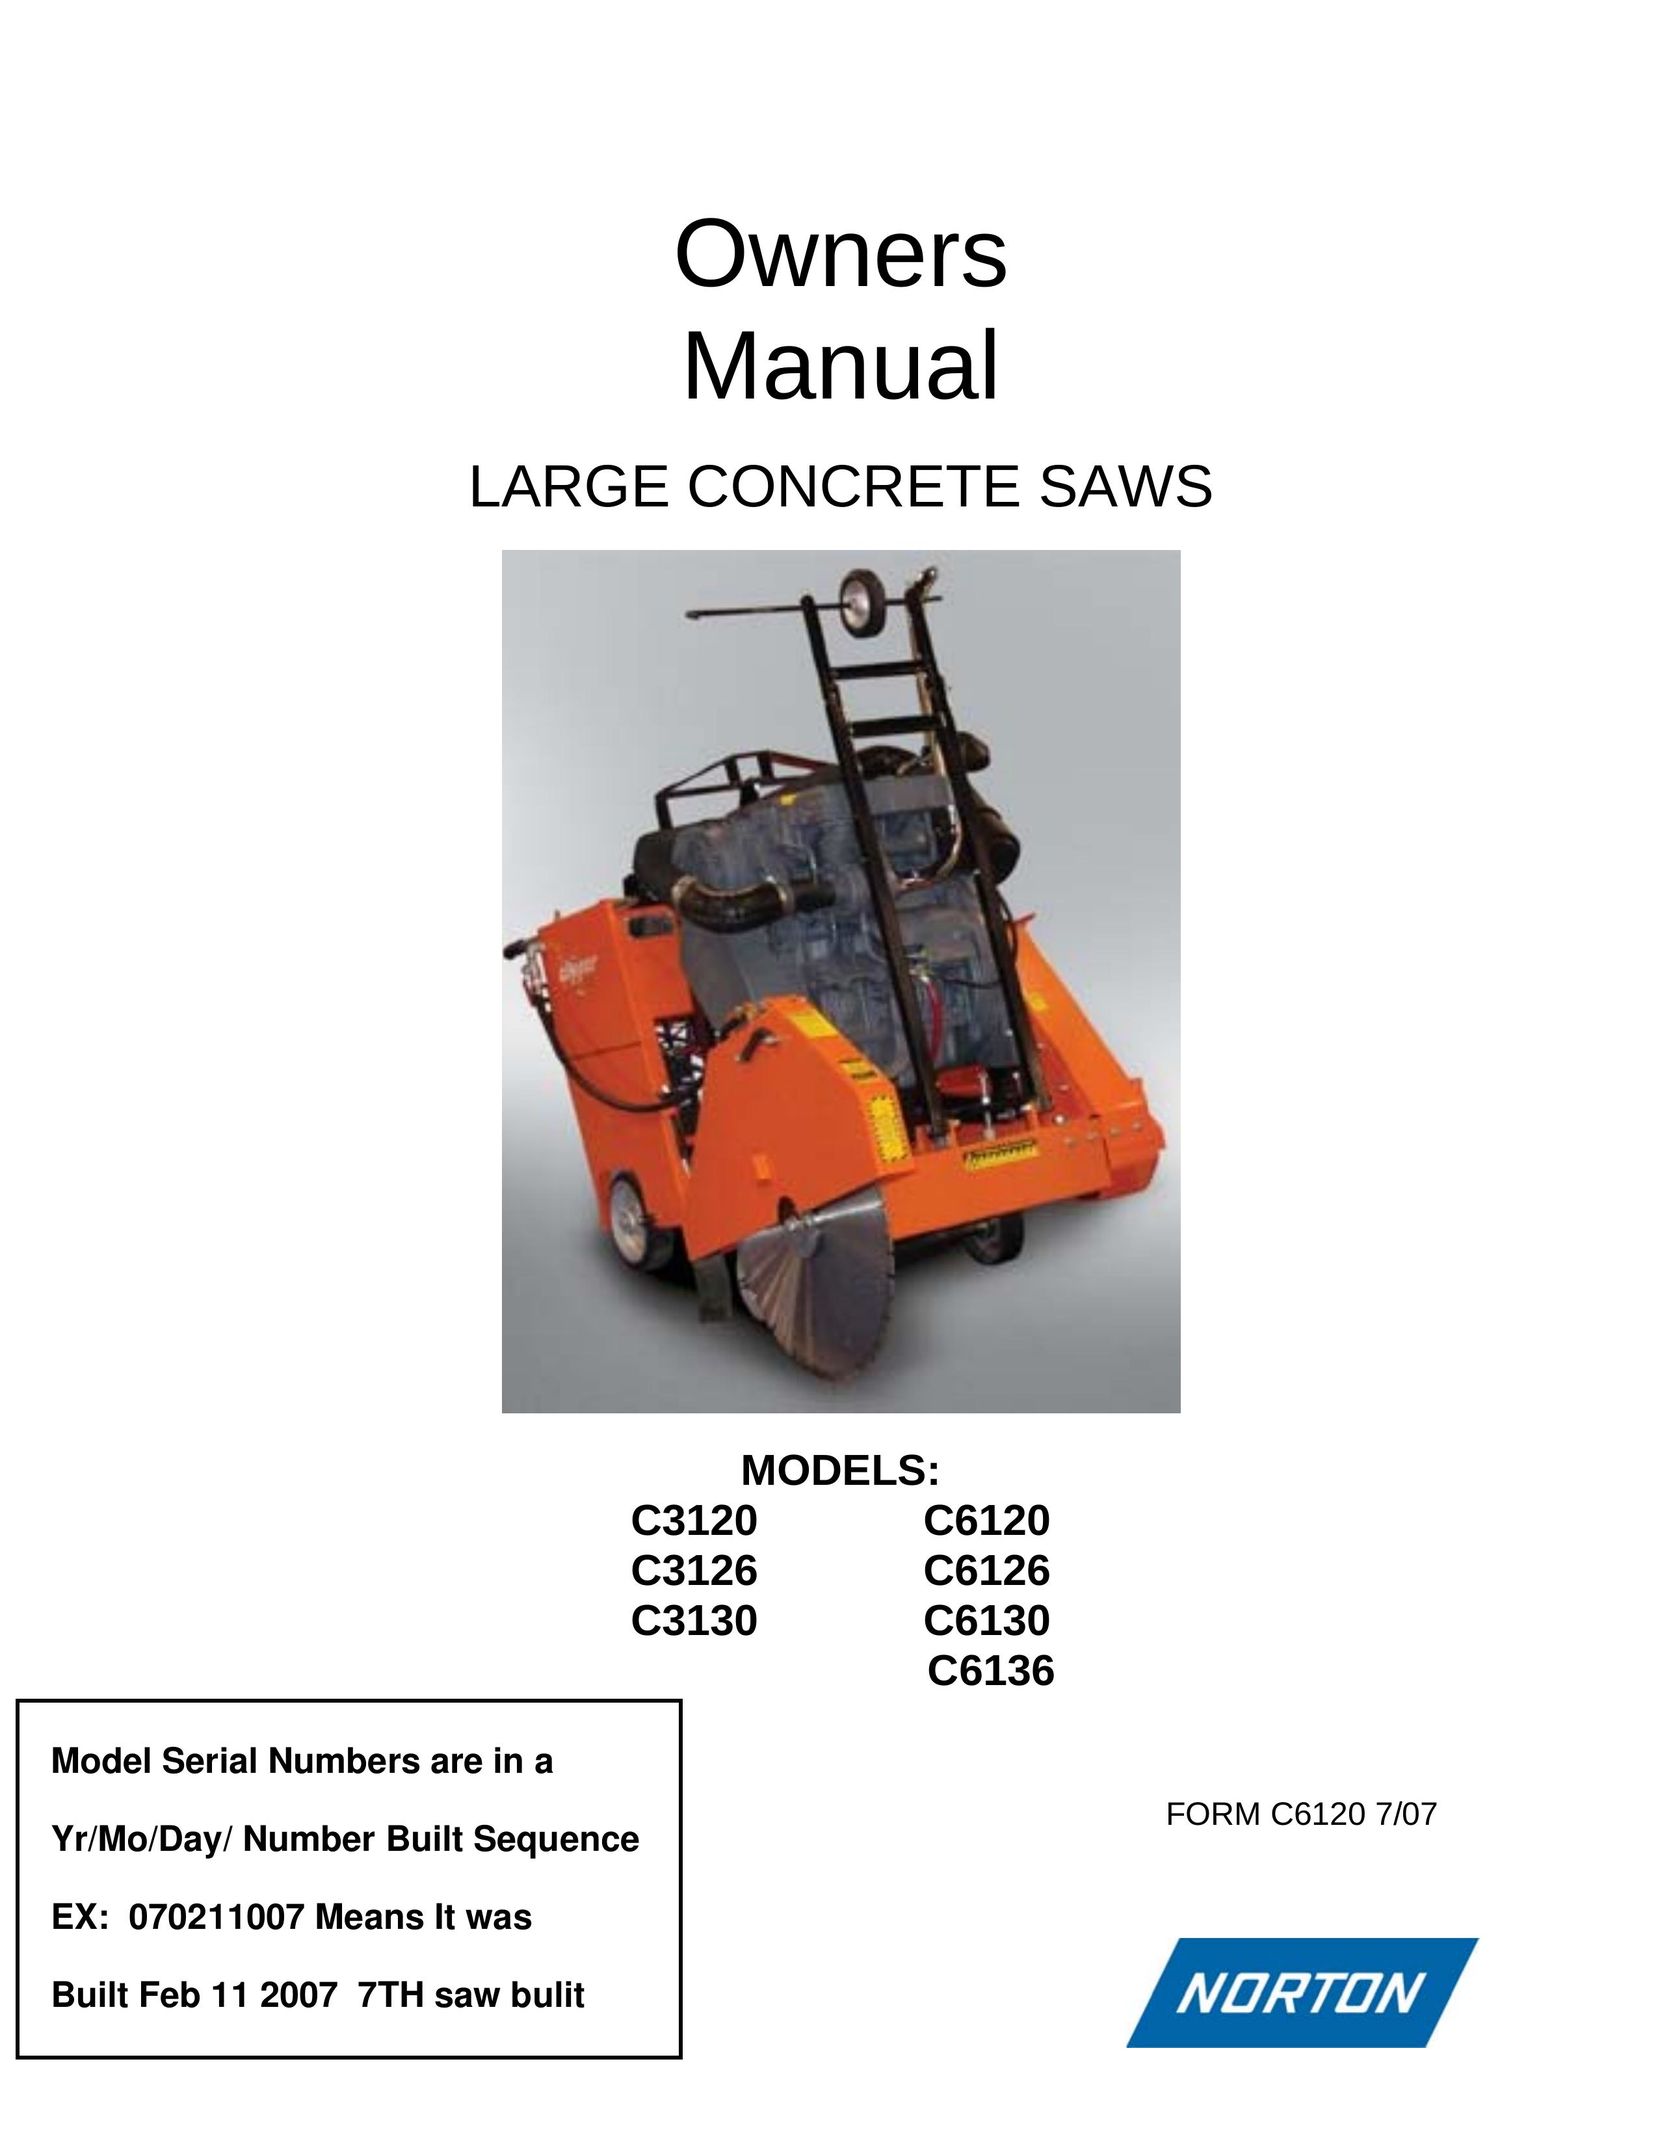 Norton Abrasives C6120 Saw User Manual